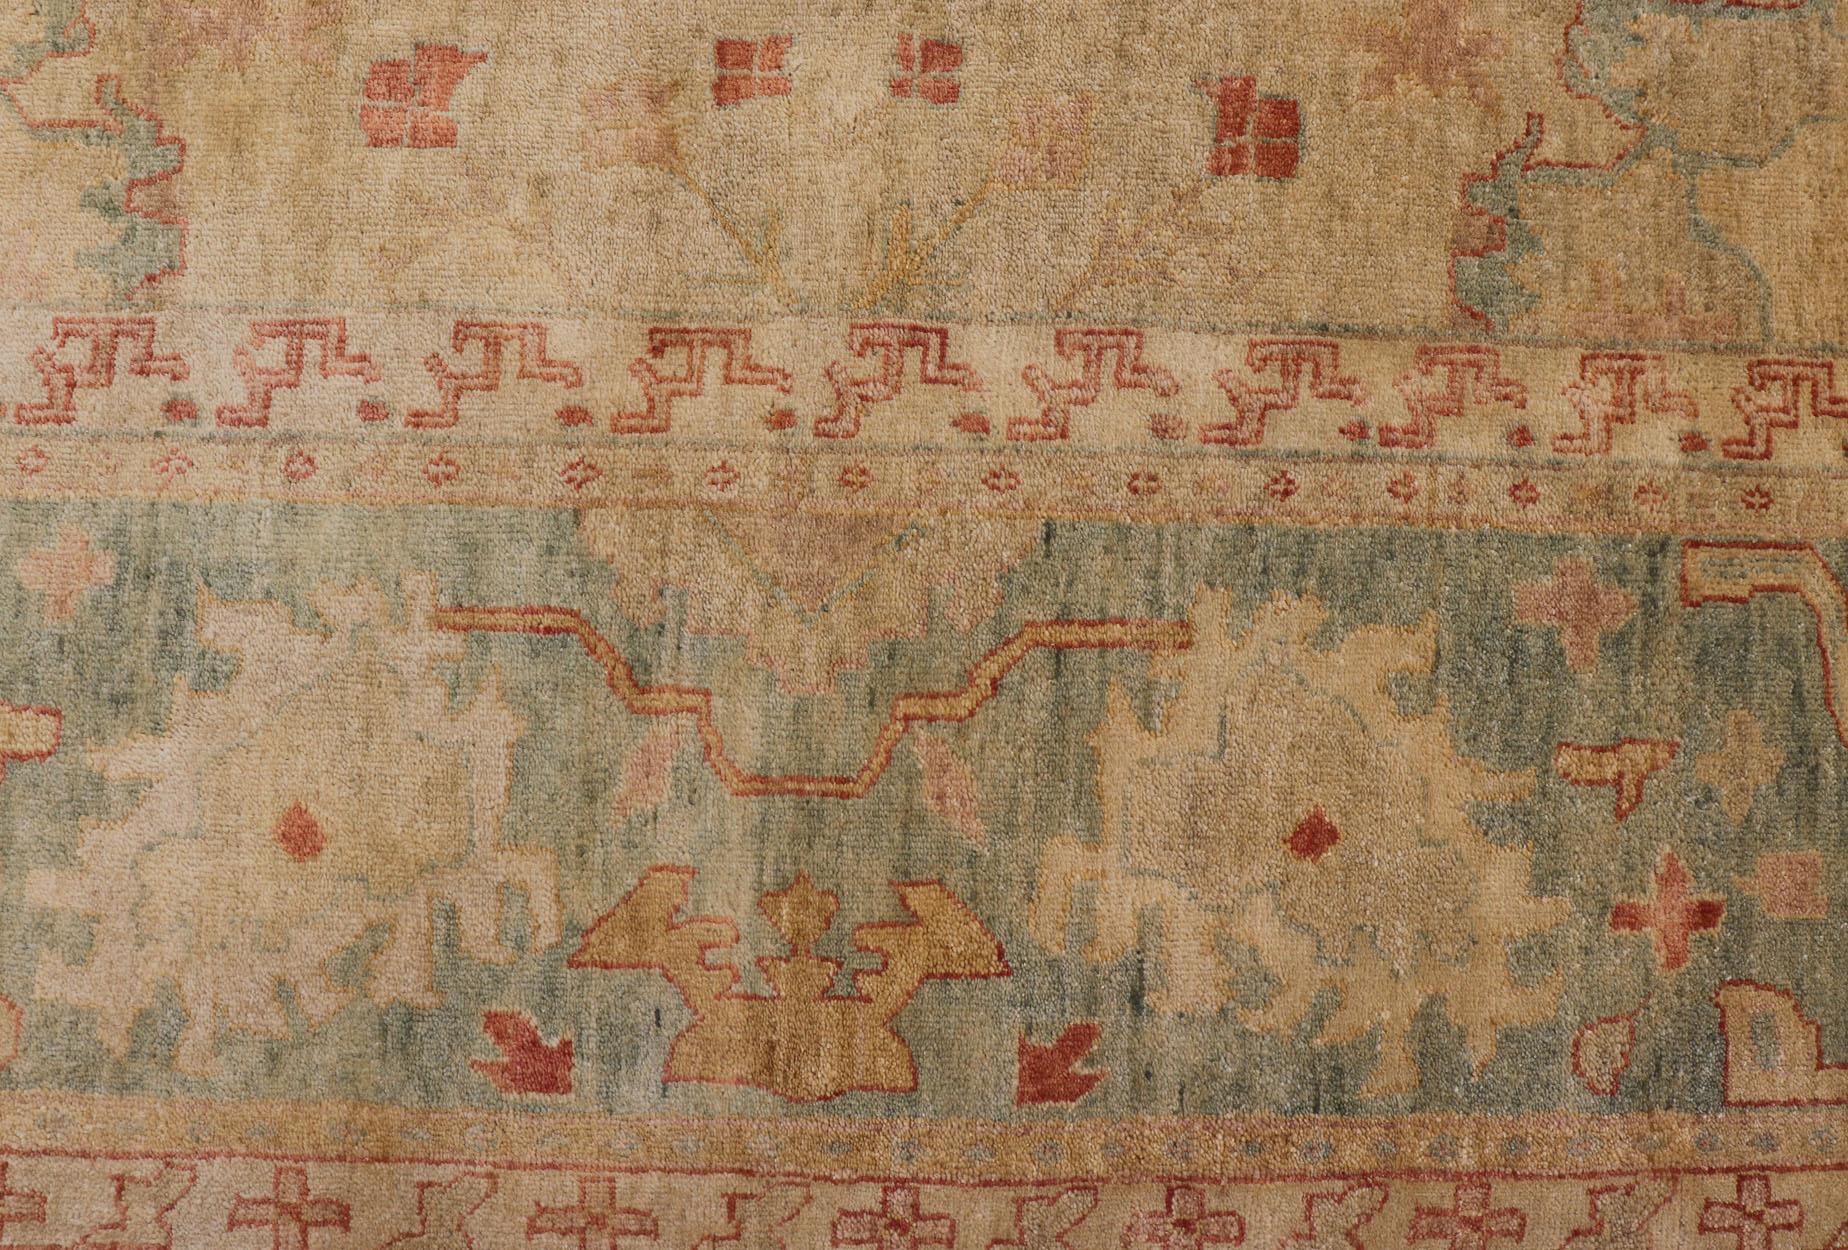 Oushak tribal surdimensionné noué à la main dans des tons de beige et de vert.
 Mesure 10'3 x 14'3
Cet art tissé a été noué à la main en Inde dans les années 2010. Cette large bordure à bandes est rendue dans un bleu vert, tenant un motif répétitif